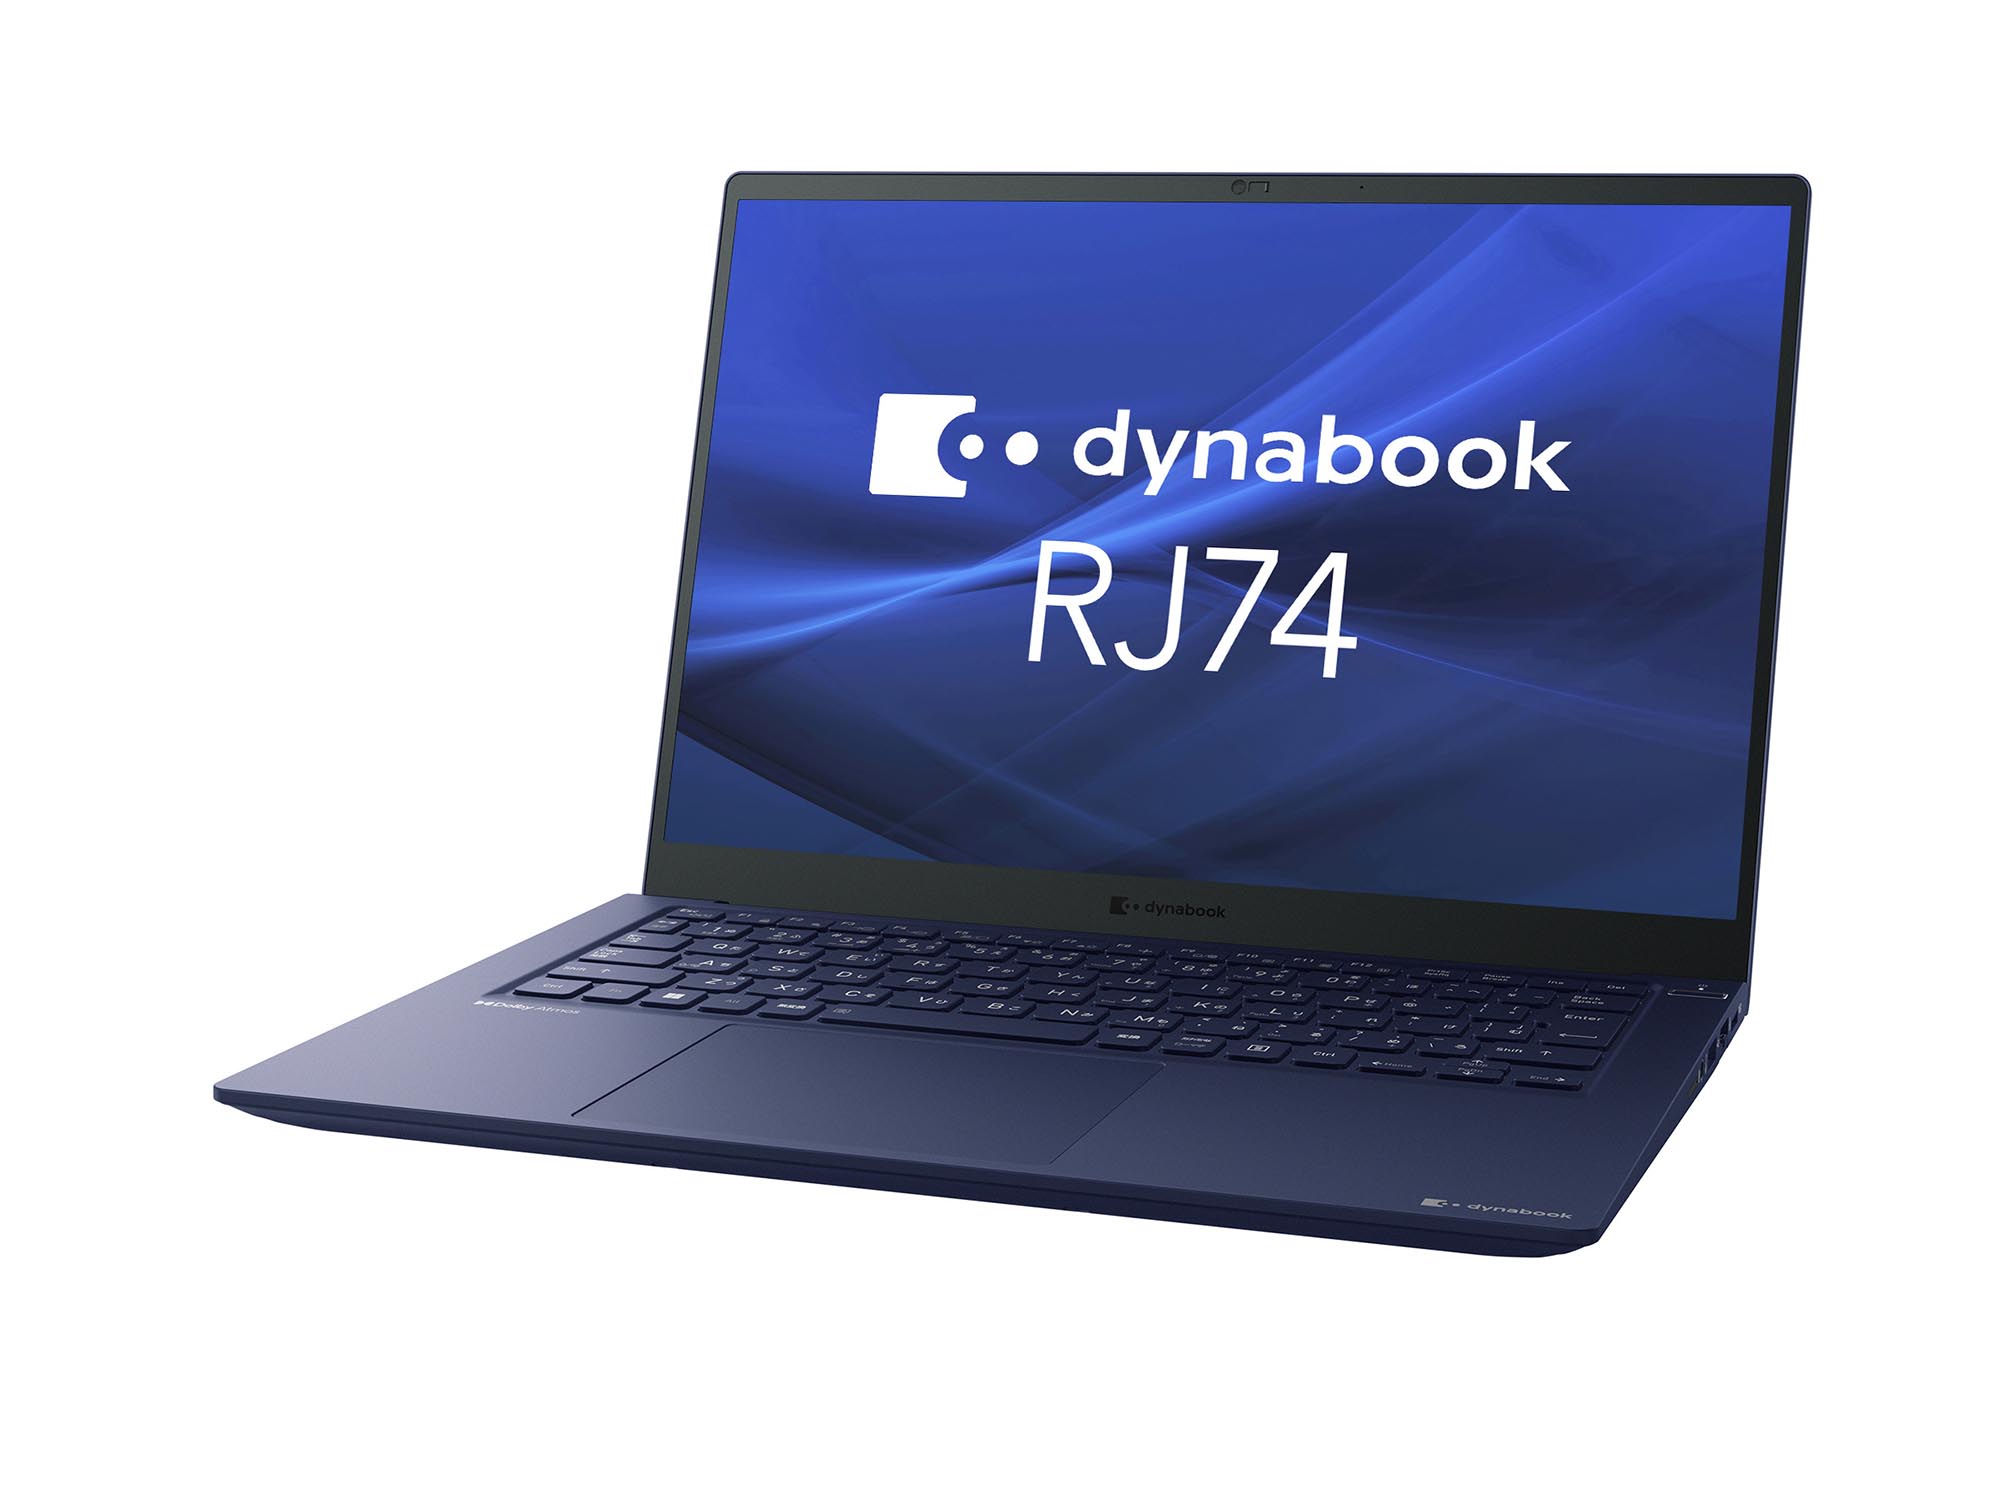 Dynabookが法人向け新型ノートPCをリリース 第13世代Coreプロセッサ 